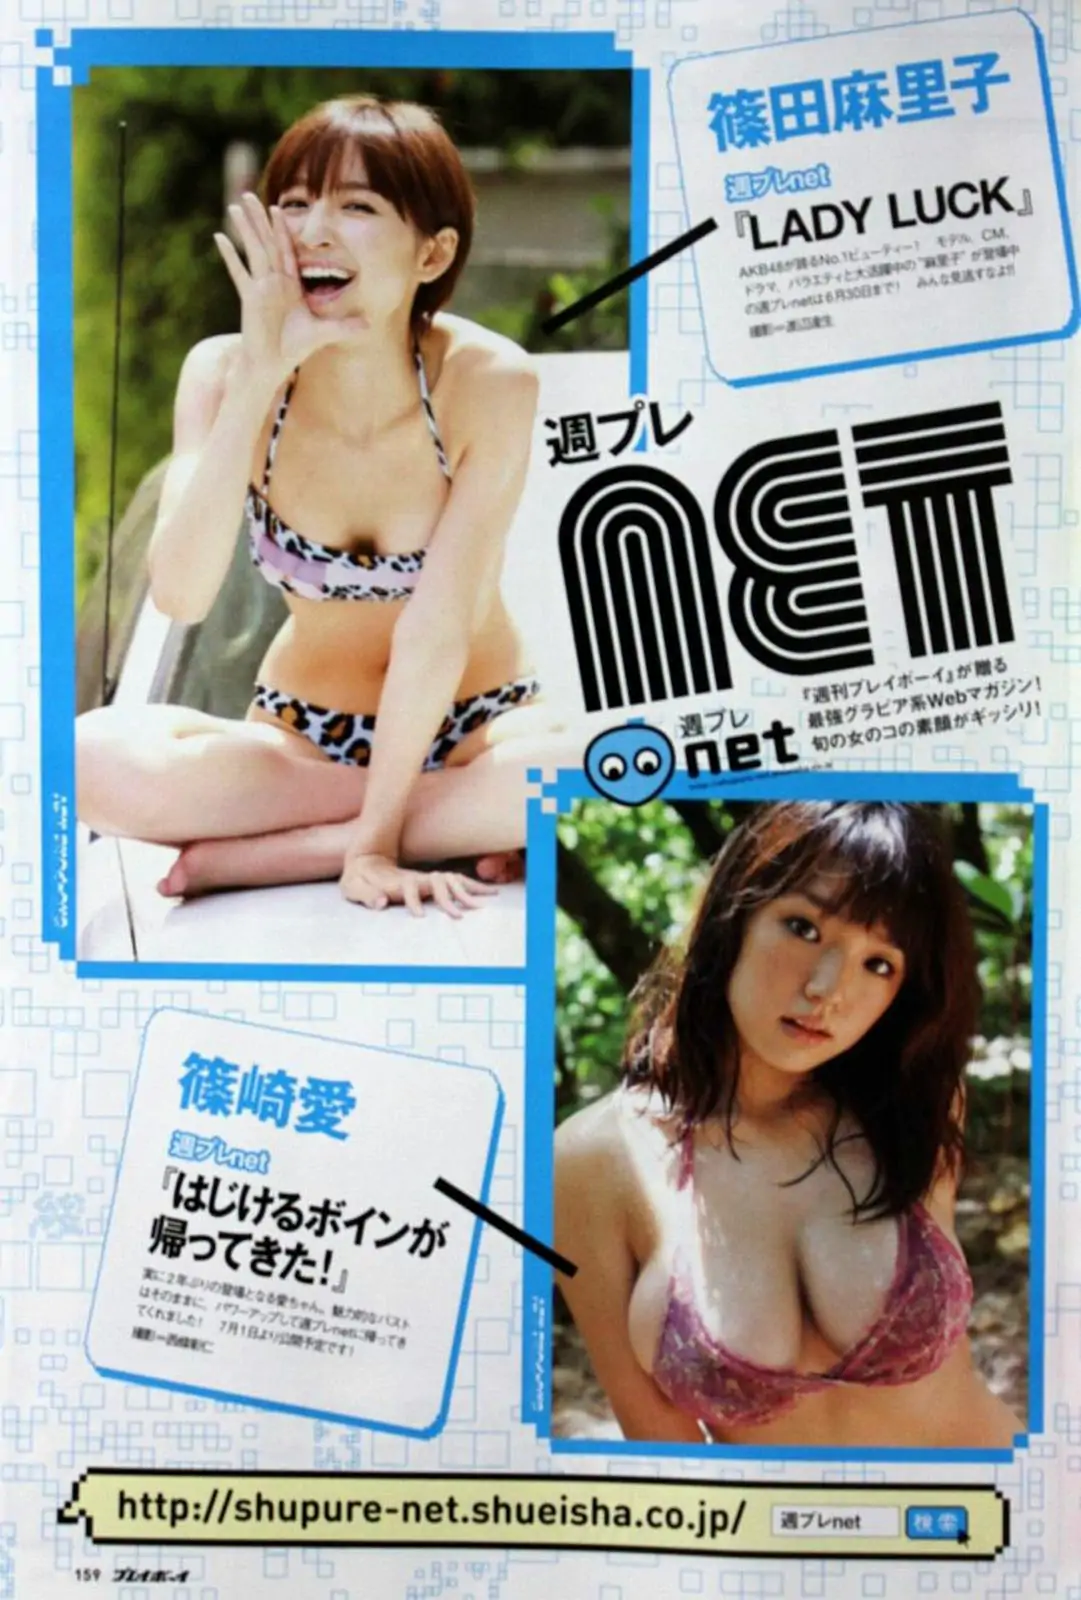 石原さとみ アイドリング!!! SUPER☆GiRLS ももいろクローバーＺ 中村一 [Weekly Playboy] 2011年No.28 写真杂志